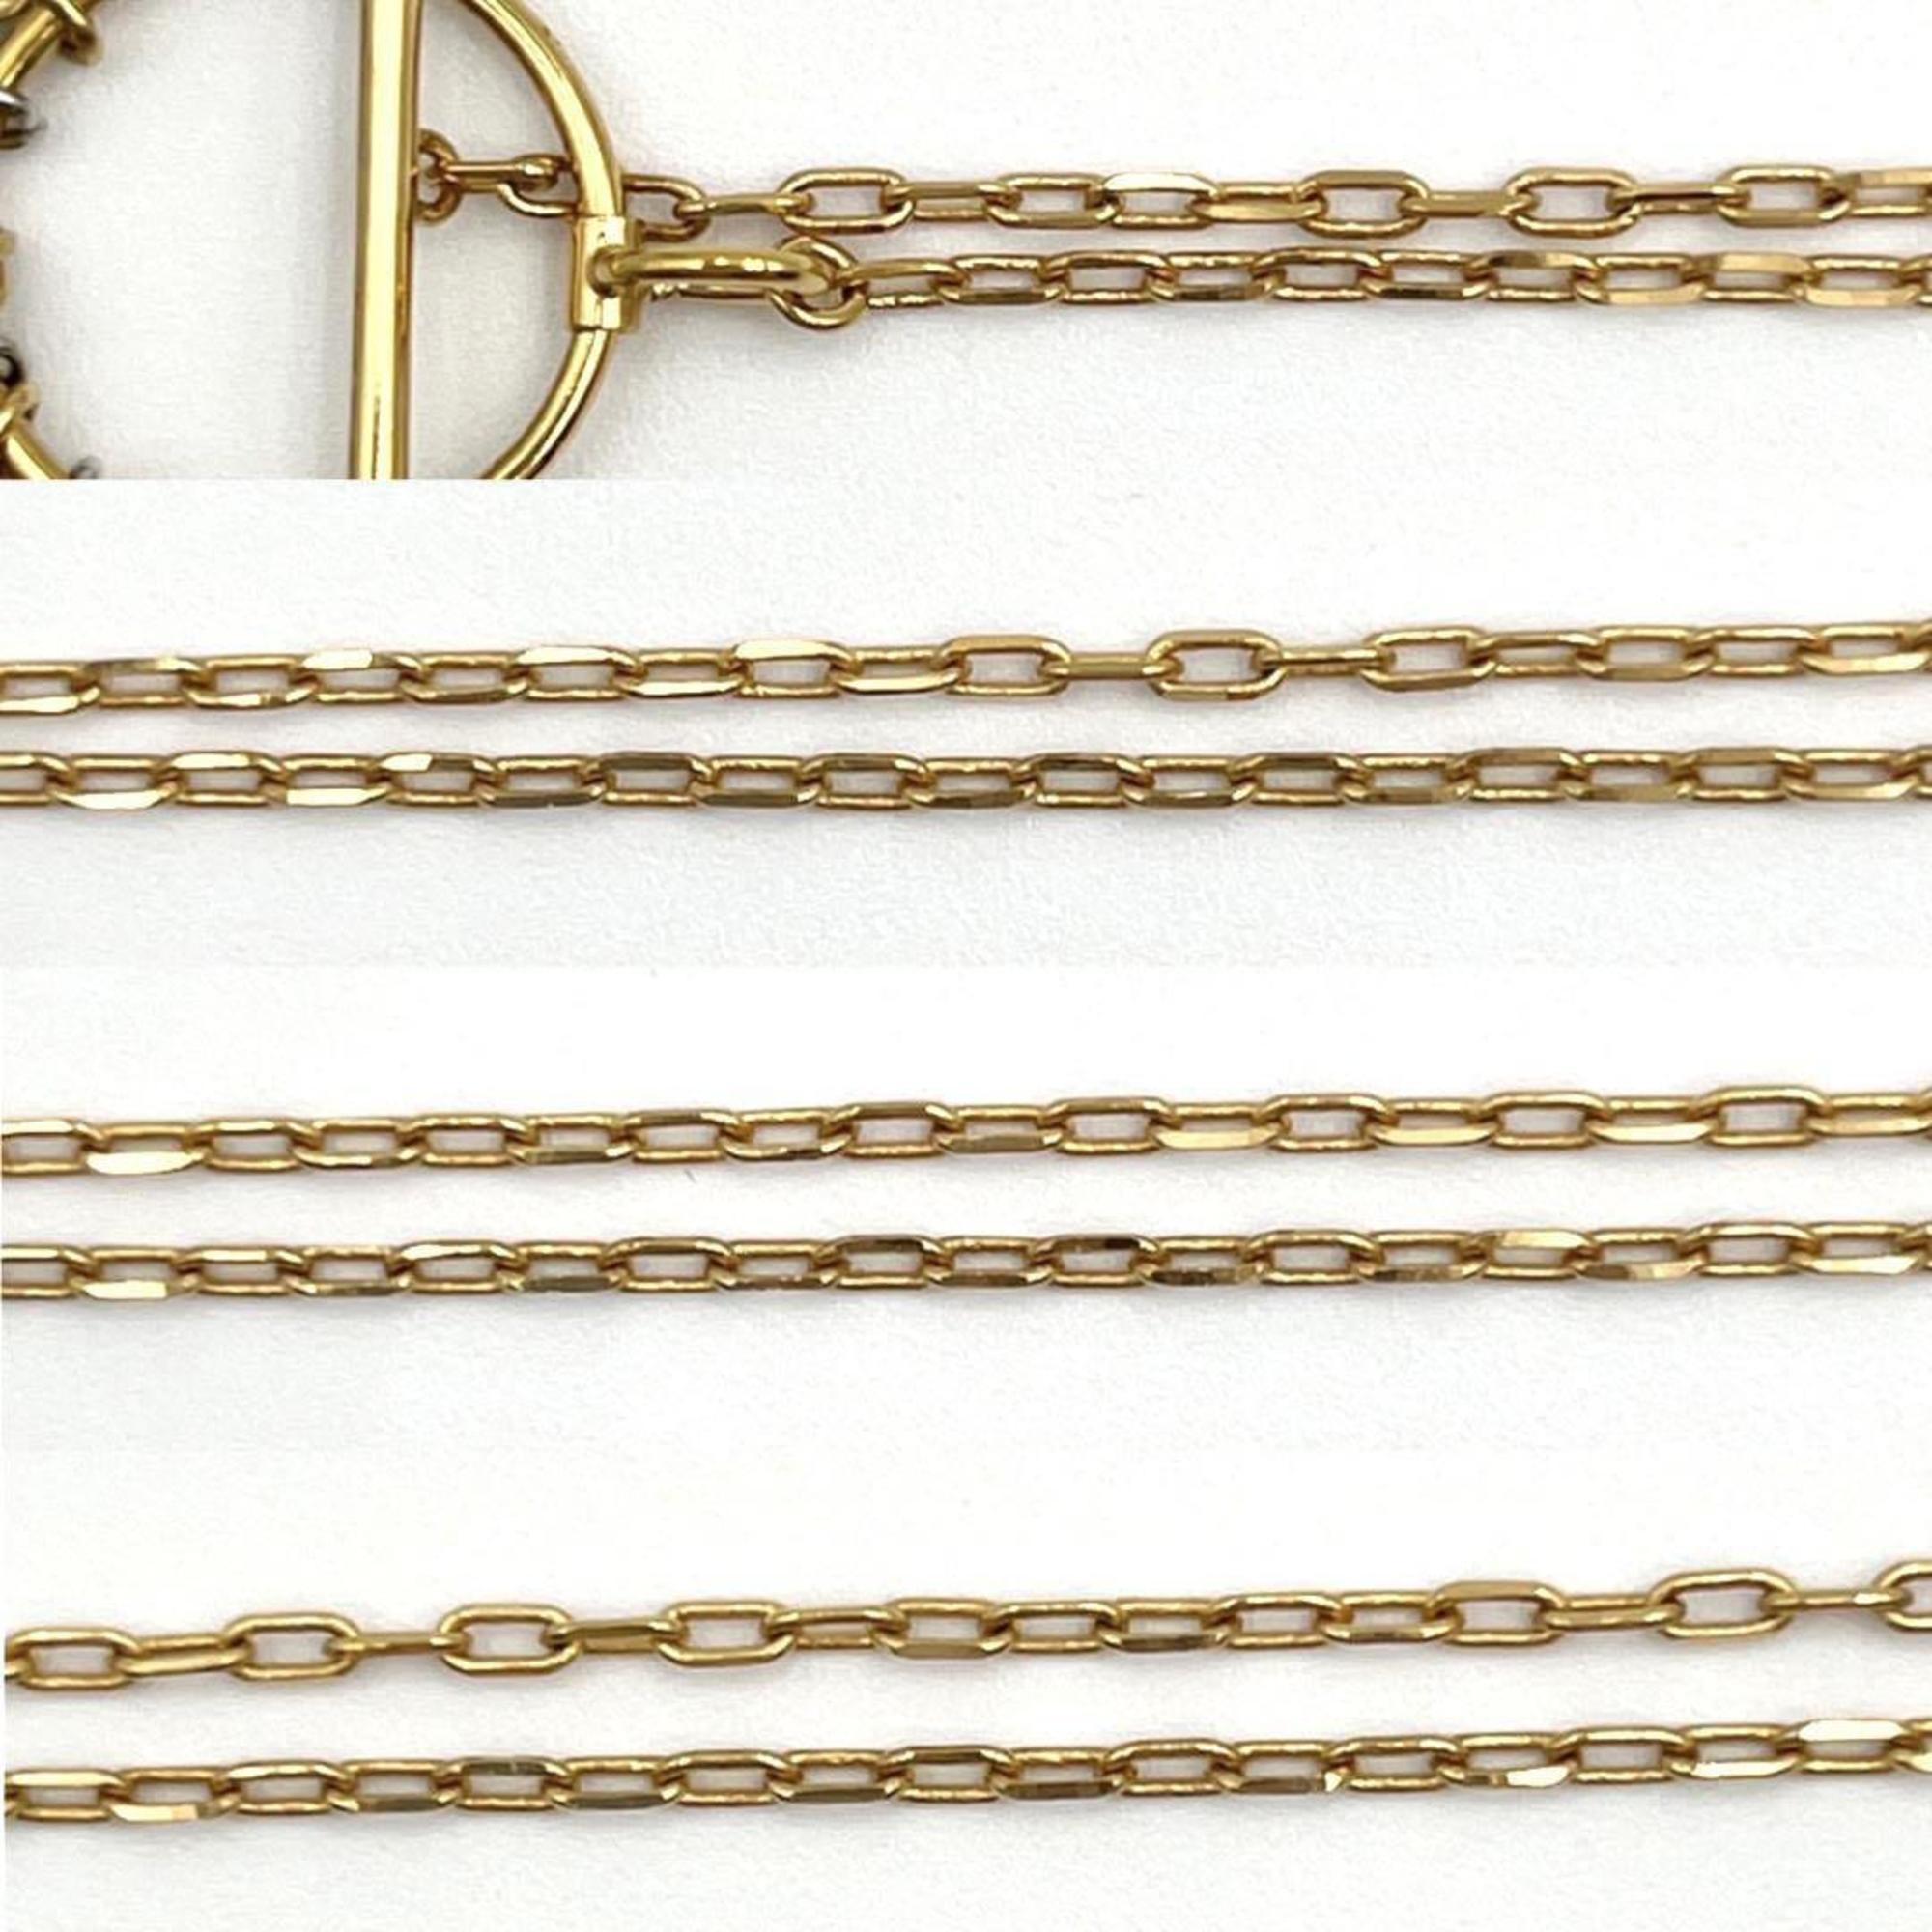 CELINE Women's Composition Necklace Pendant